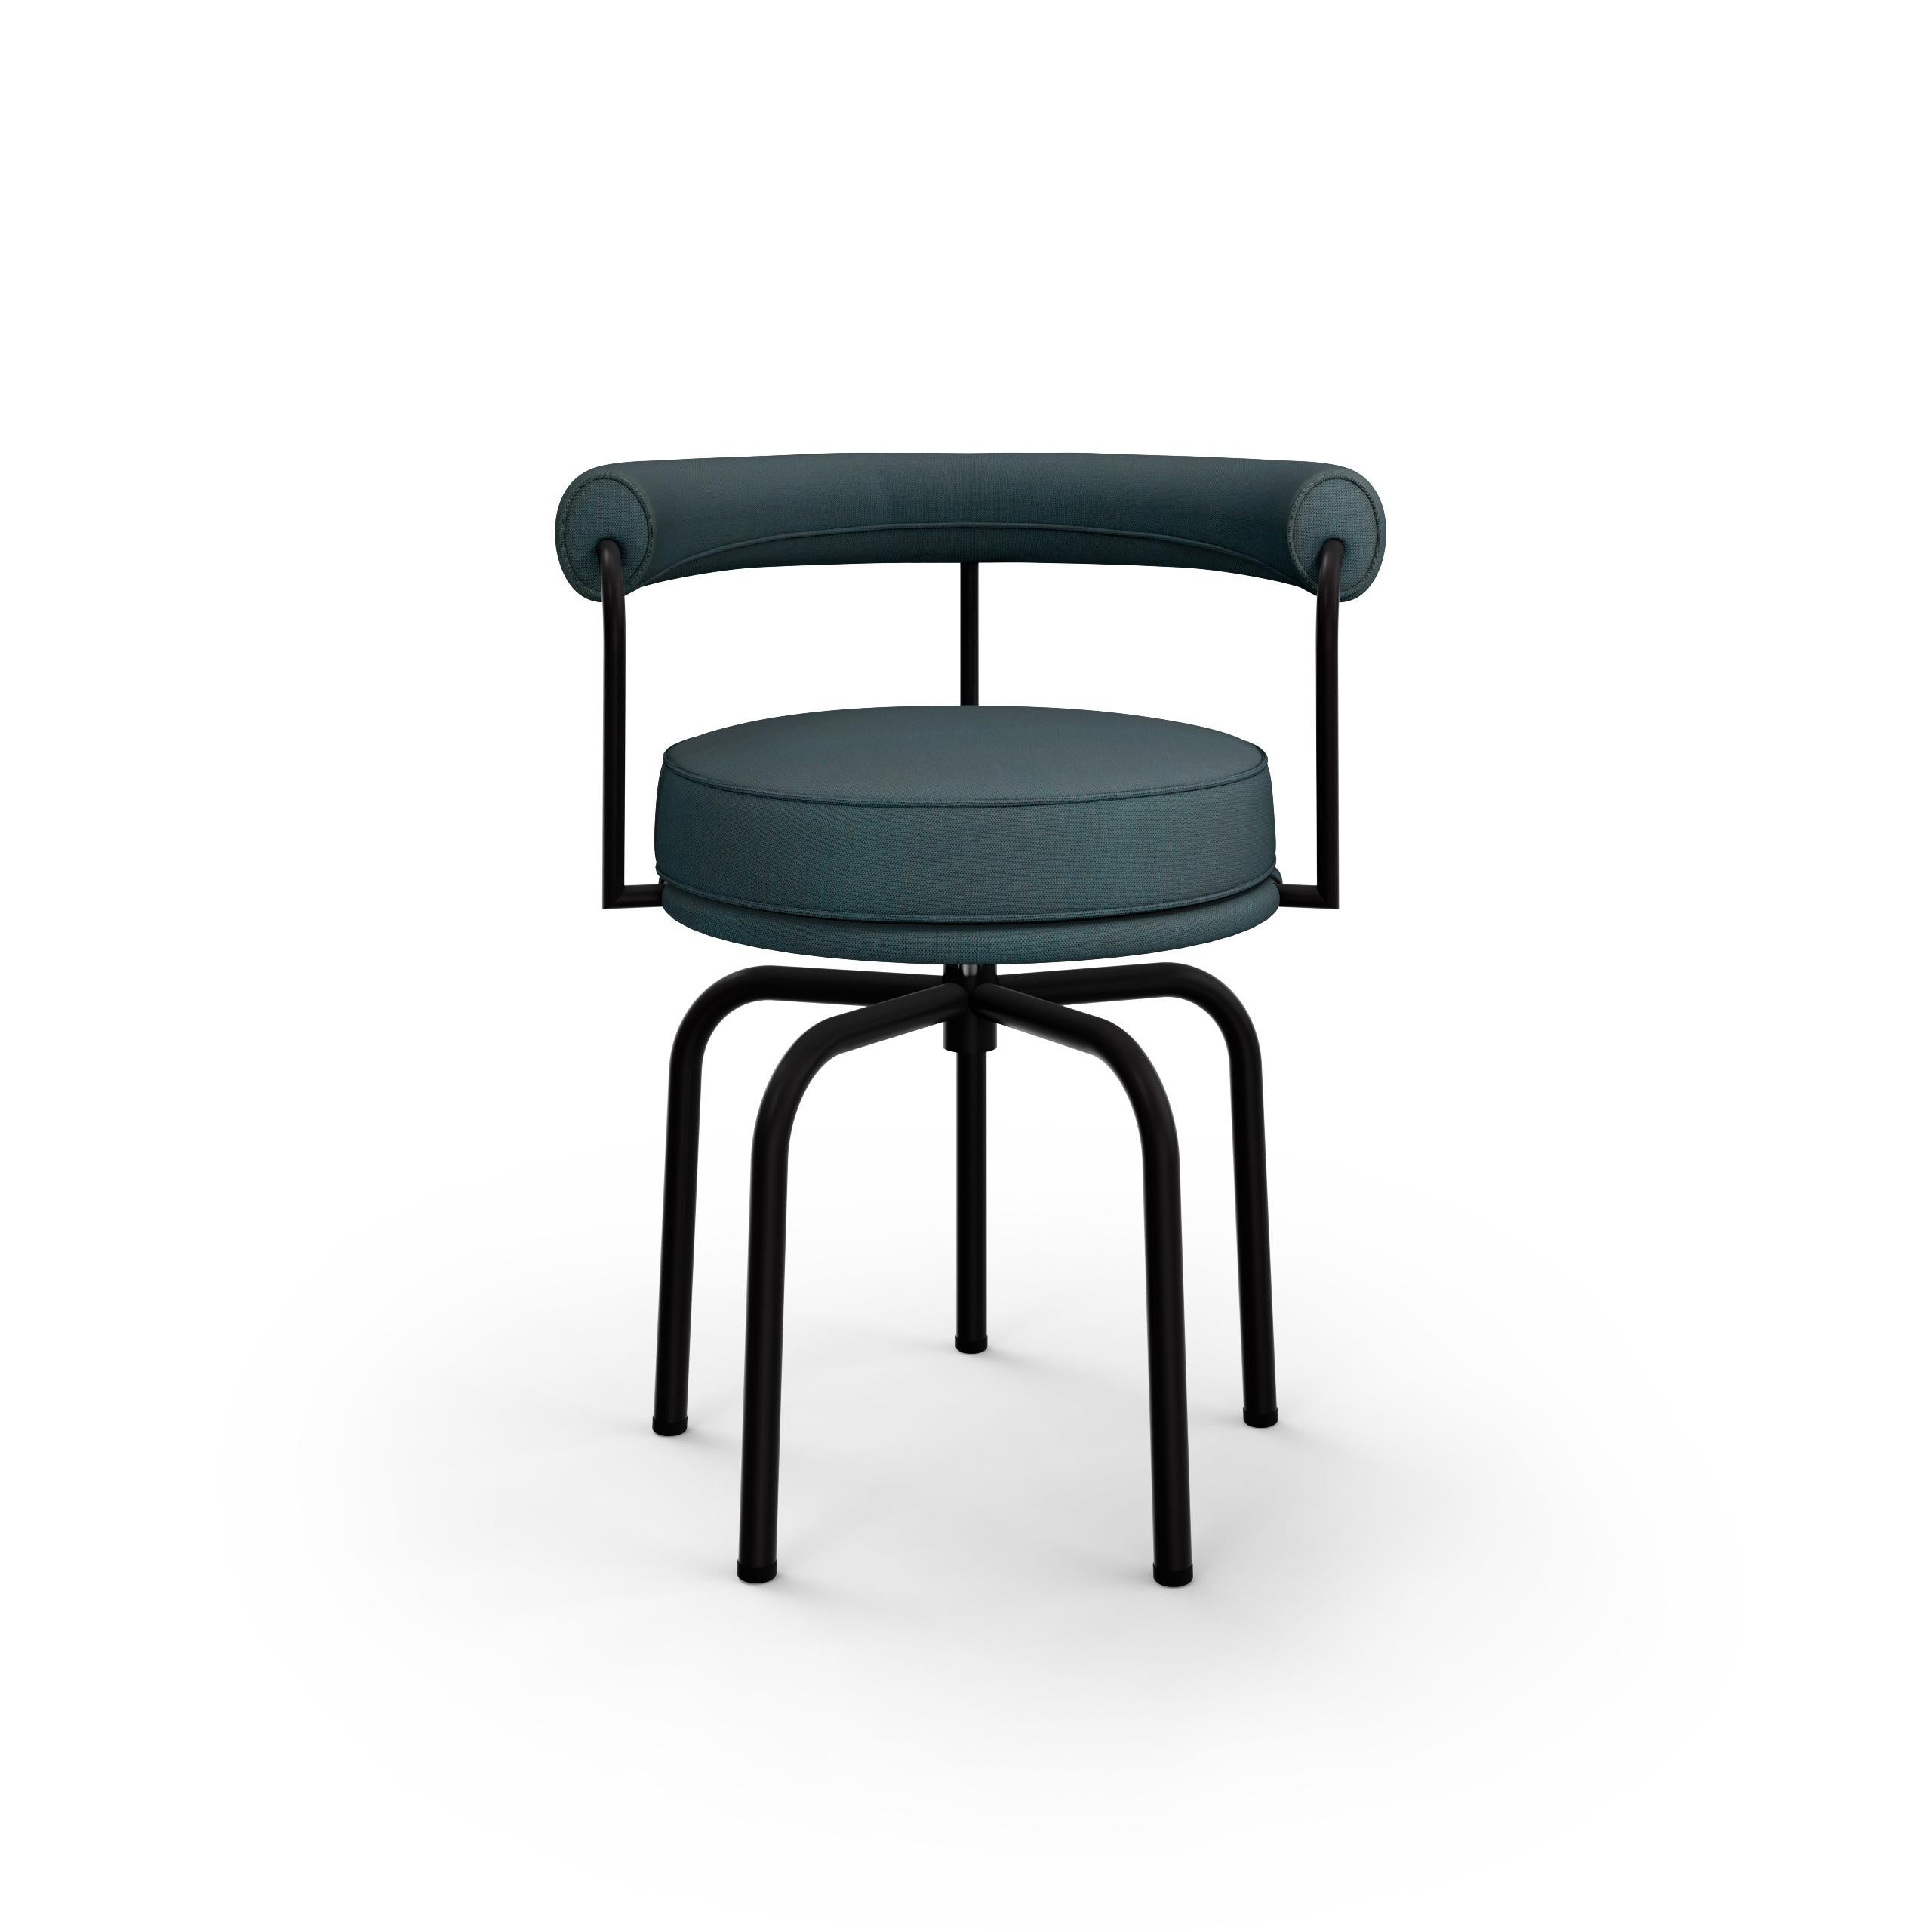 Texturierter brauner LC7-Stuhl für den Außenbereich, entworfen von Charlotte Perriand im Jahr 1927. Neu aufgelegt im Jahr 1978.
Hergestellt von Cassina in Italien.

Entworfen von Charlotte Perriand und Teil der Kollektion LC von Le Corbusier, Pierre